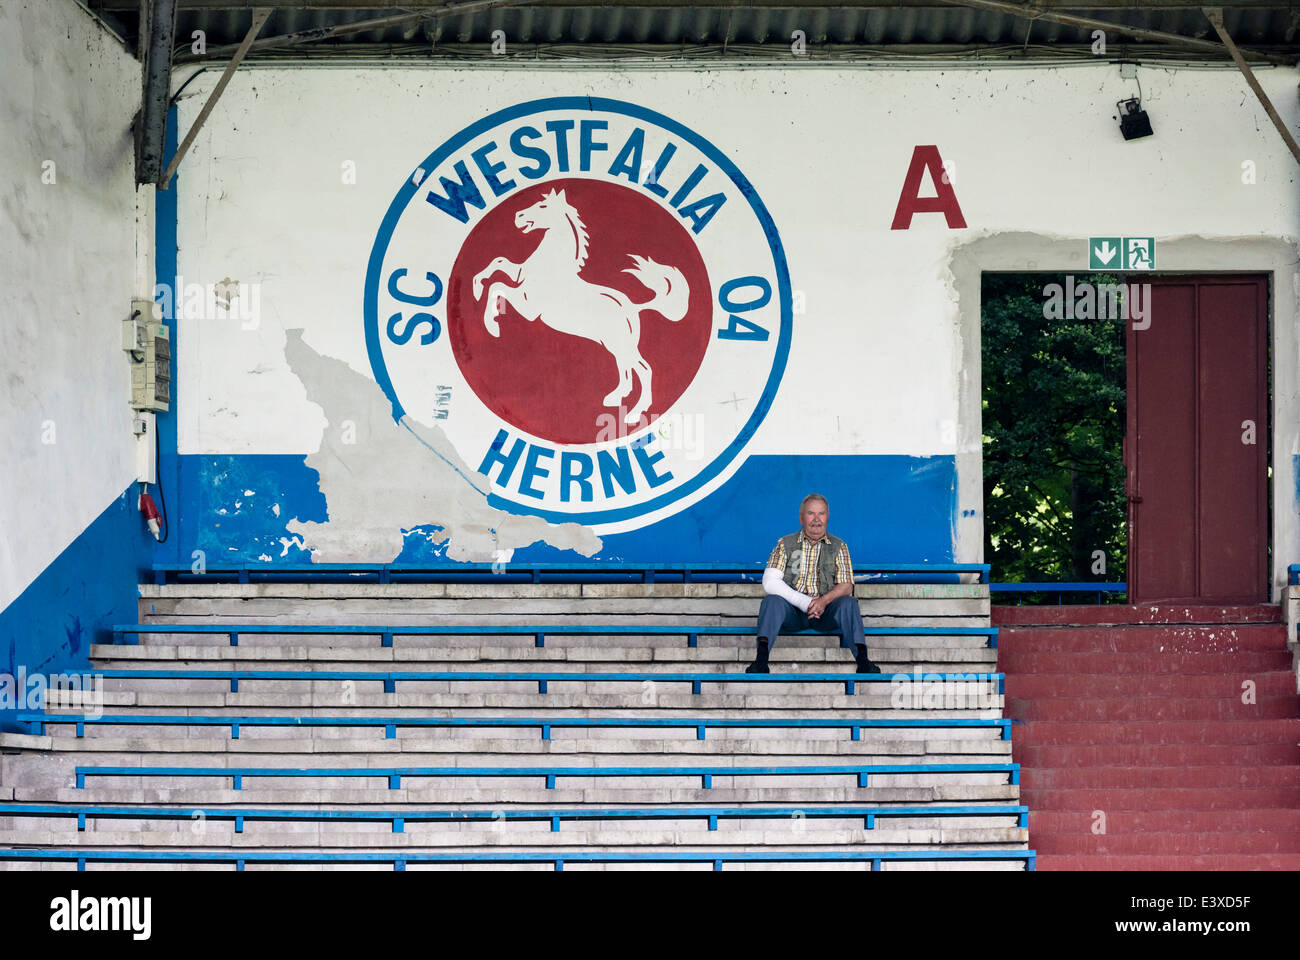 Einzelne Zuschauer sitzt auf dem verlassenen steht der ehemals berühmten Fußball-Club Westfalia Herne. Stockfoto